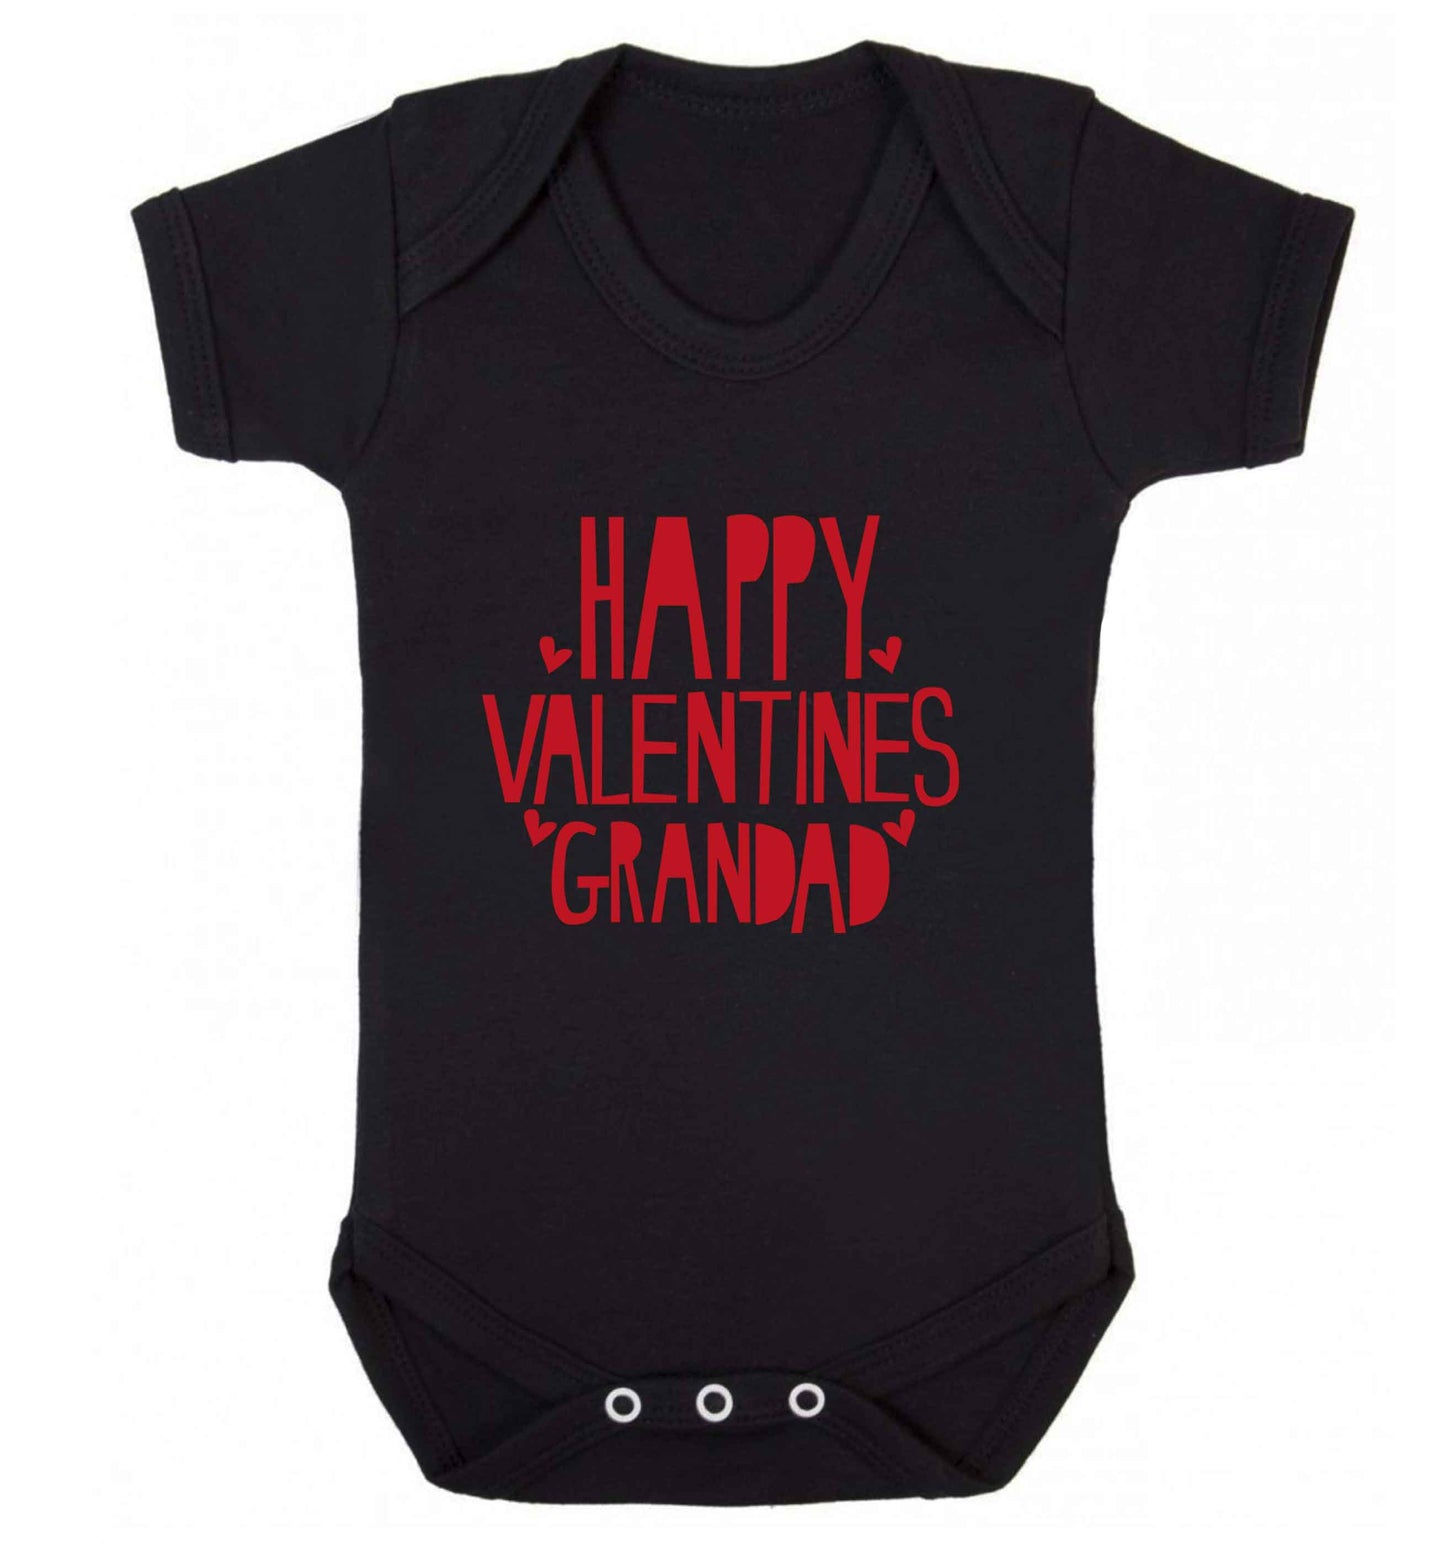 Happy valentines grandad baby vest black 18-24 months